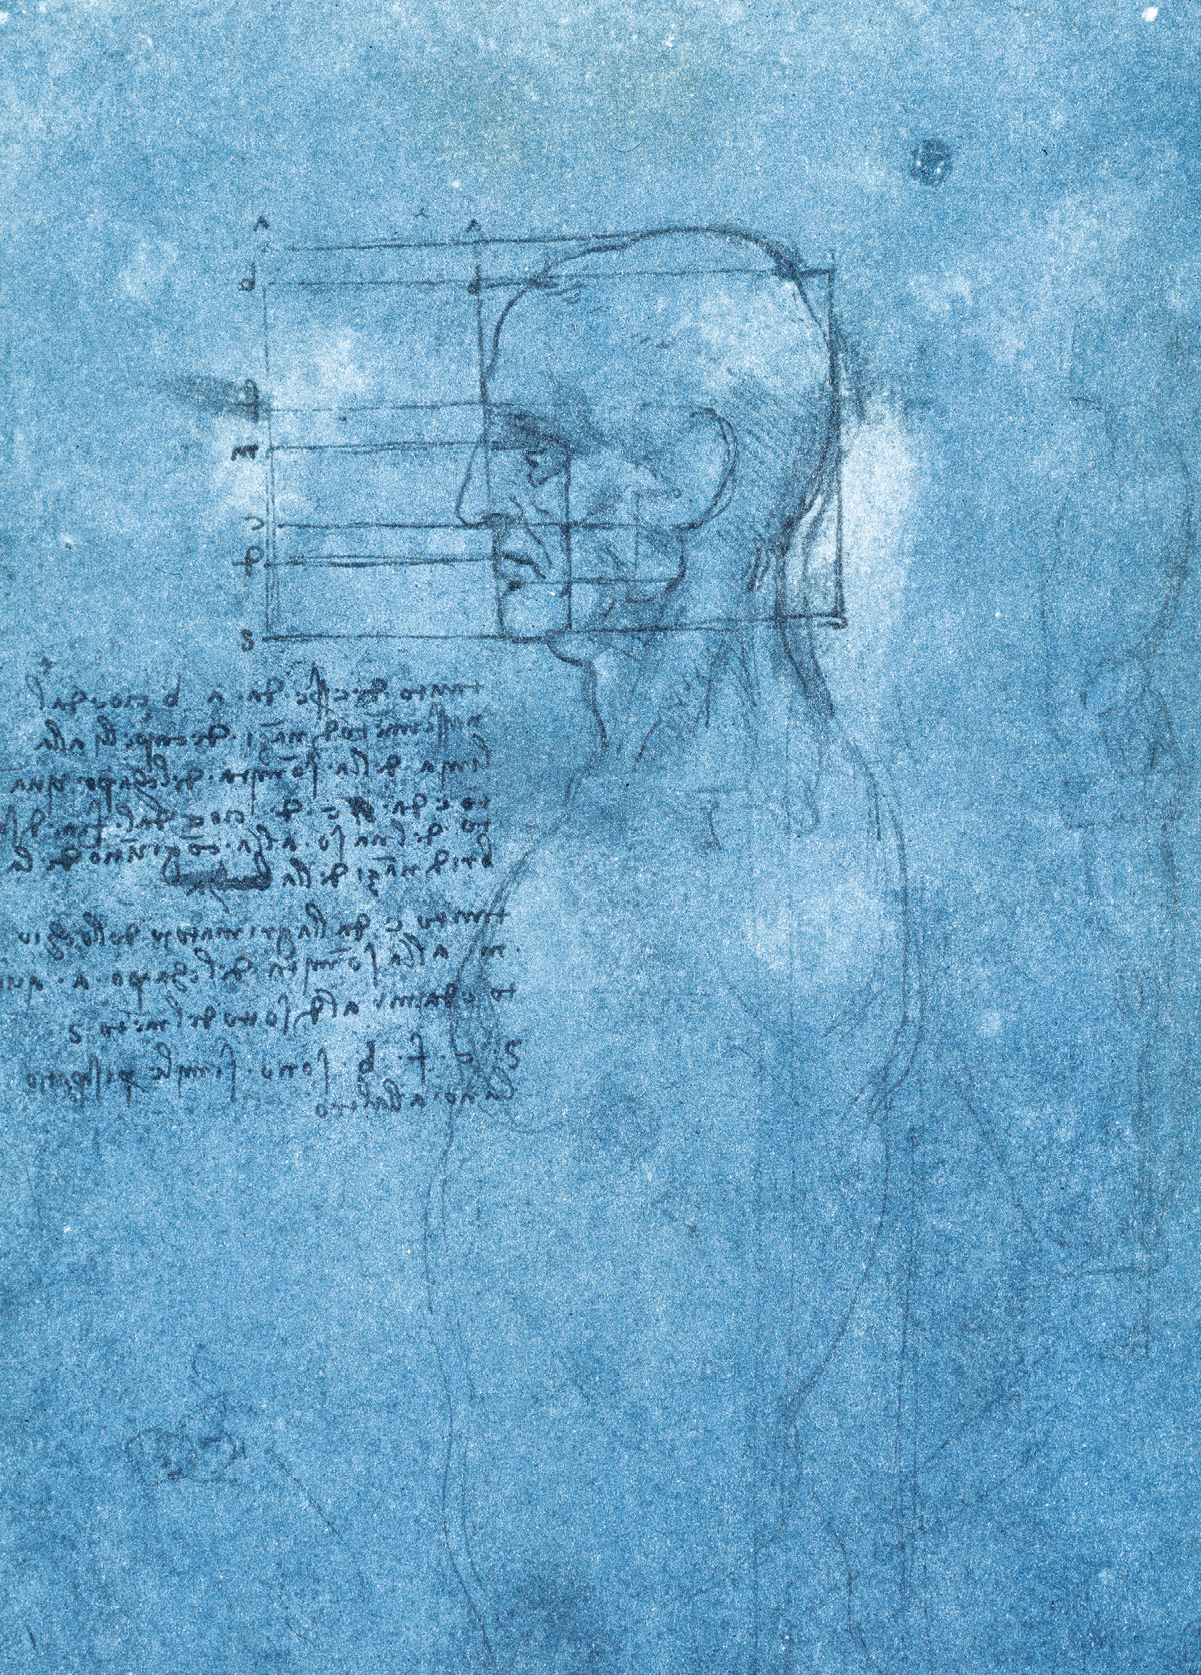 Desenho. Sobre uma folha azulada há traços finos de lápis retratando uma figura humana vista de lado; sobre seu rosto, há linhas que se cruzam formando quadrados e retângulos. Na parte inferior esquerda, há um texto.